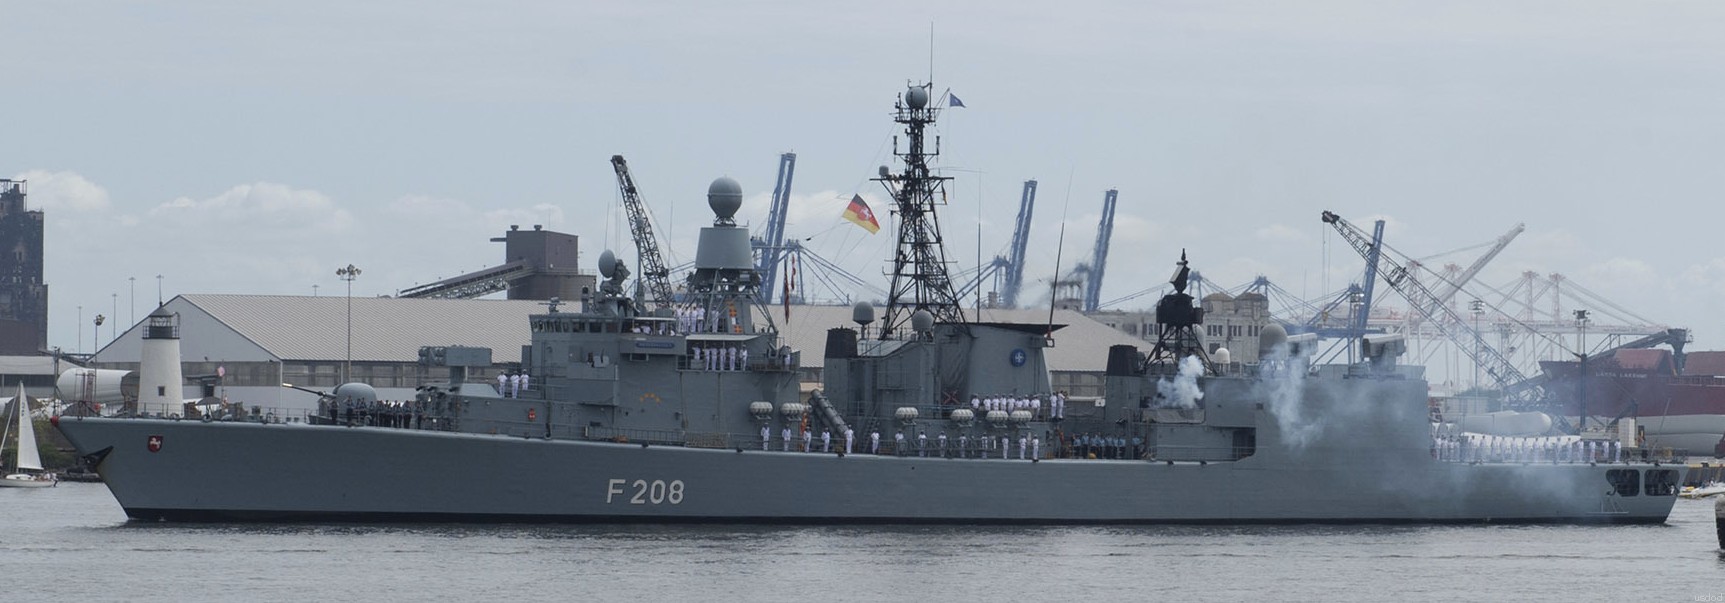 f-208 fgs niedersachsen type 122 bremen class frigate german navy 18